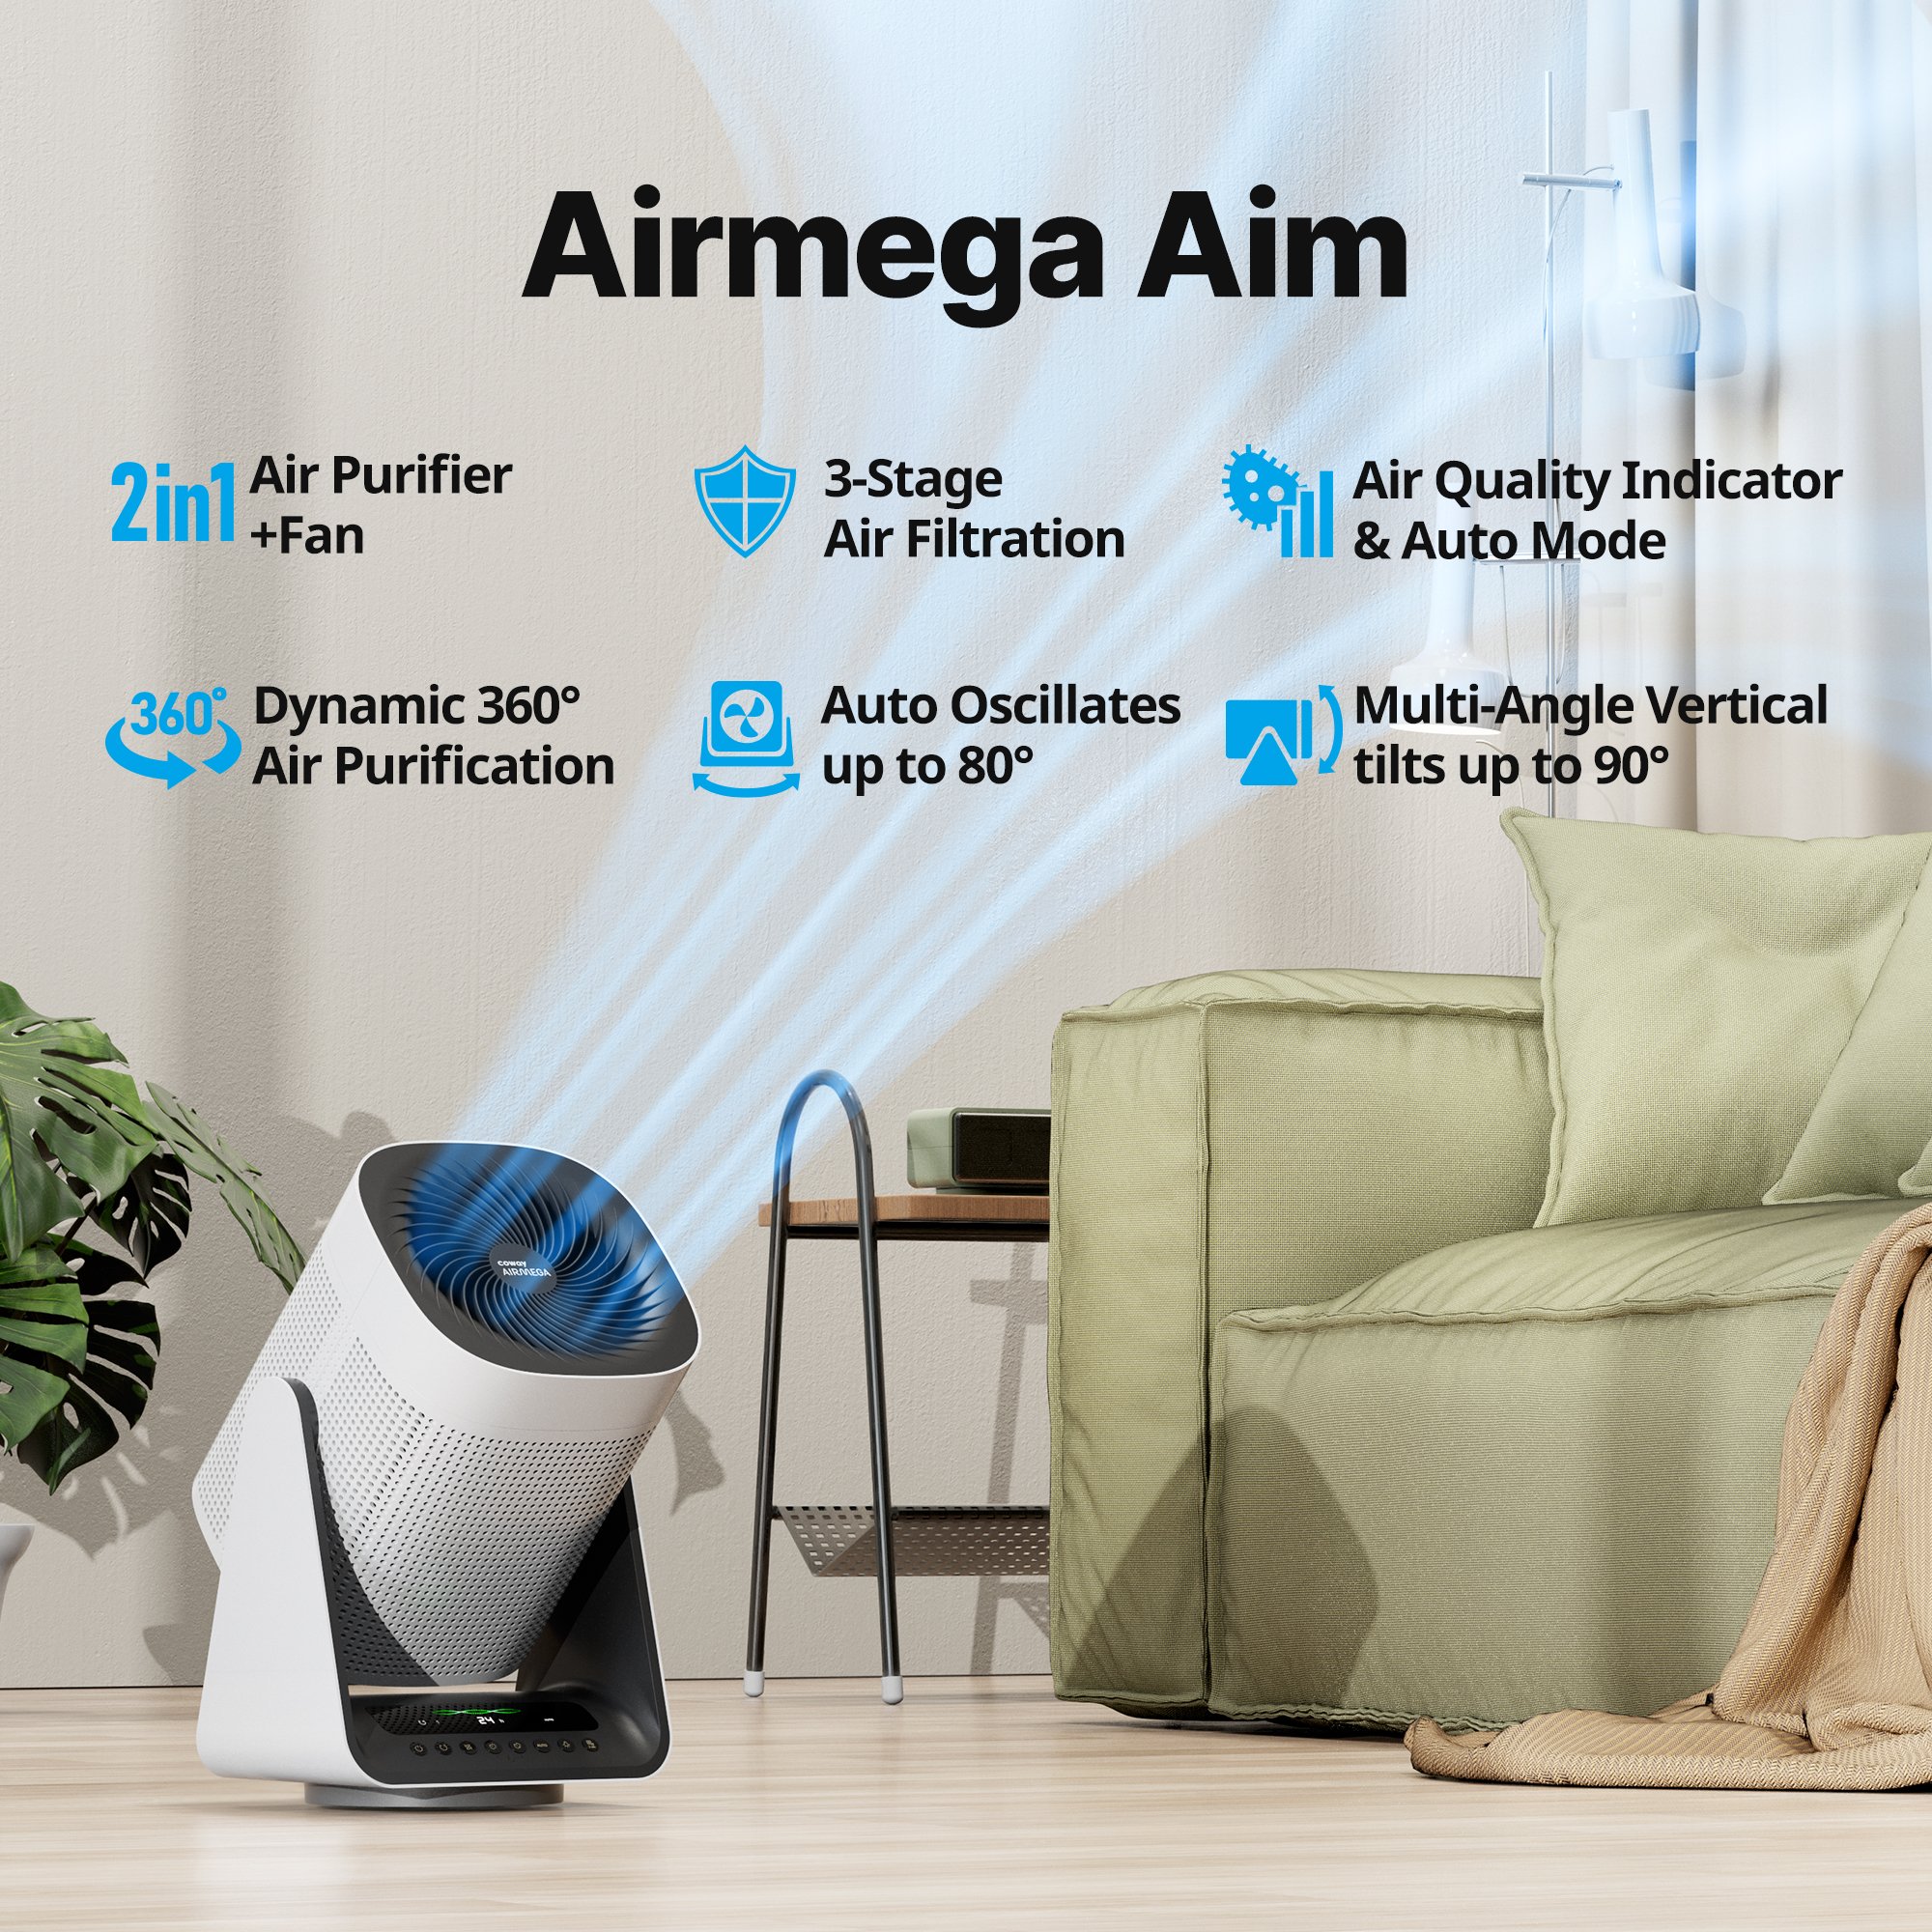 Airmega Aim key features 